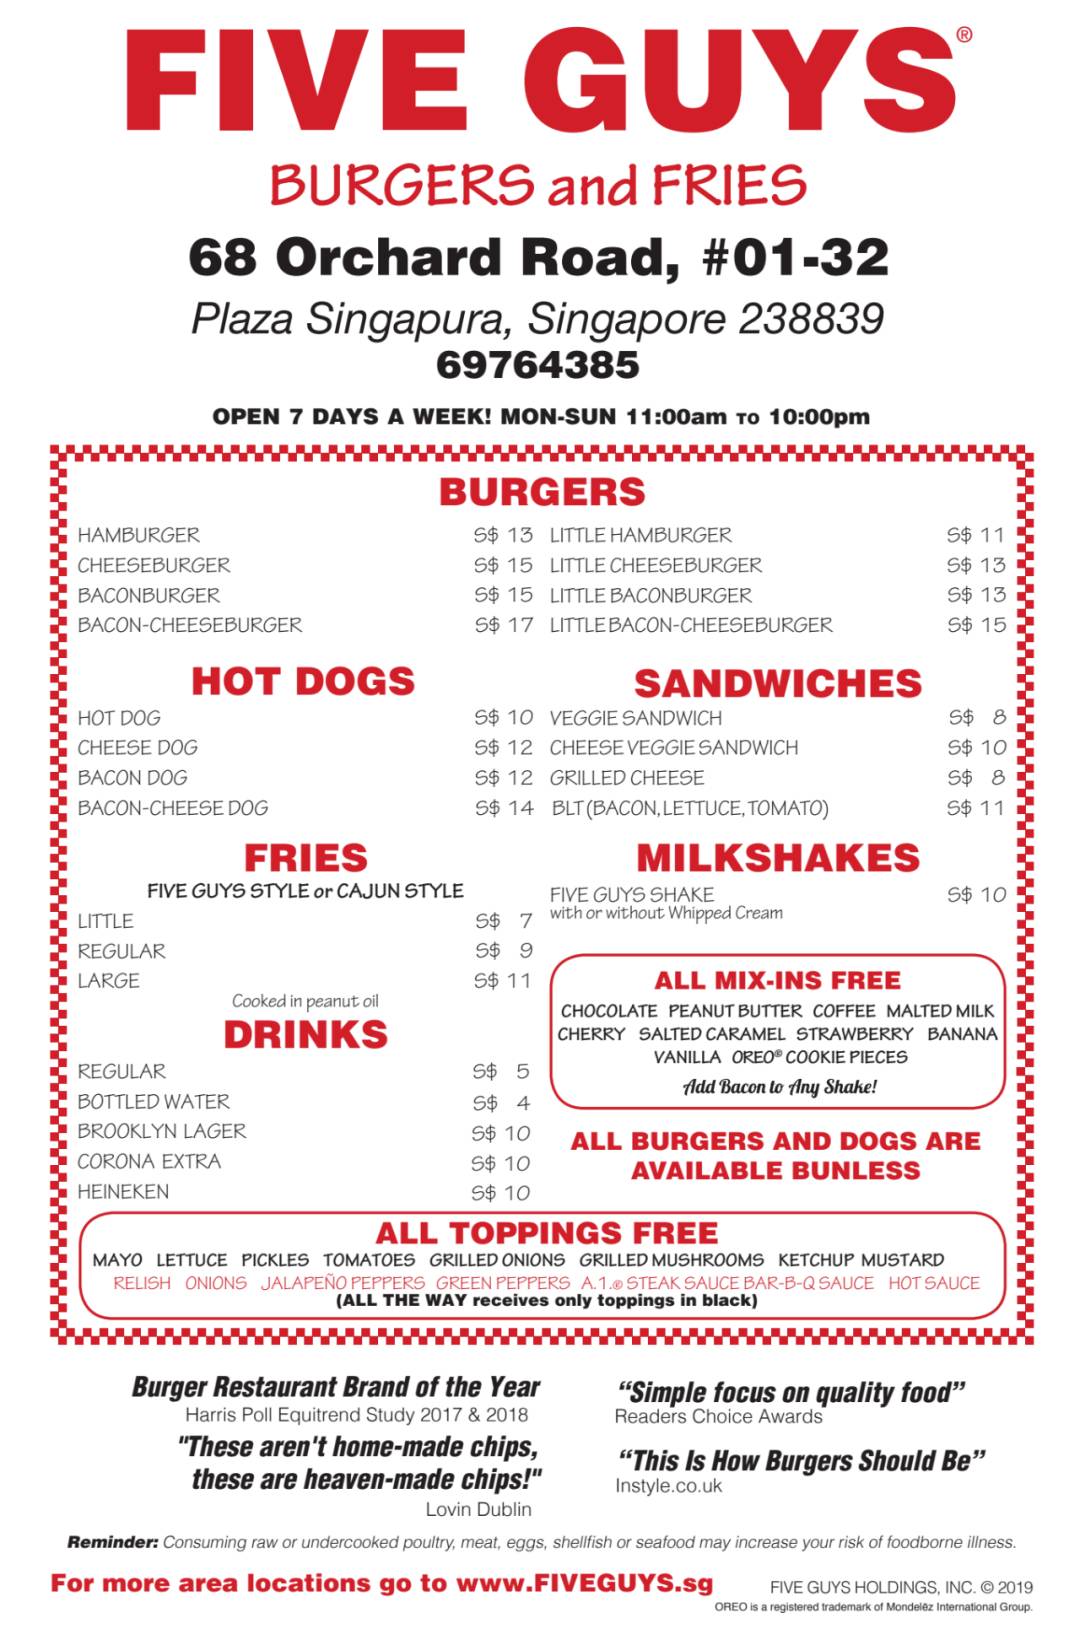 美国汉堡连锁店Five Guys新加坡第二家分店开业